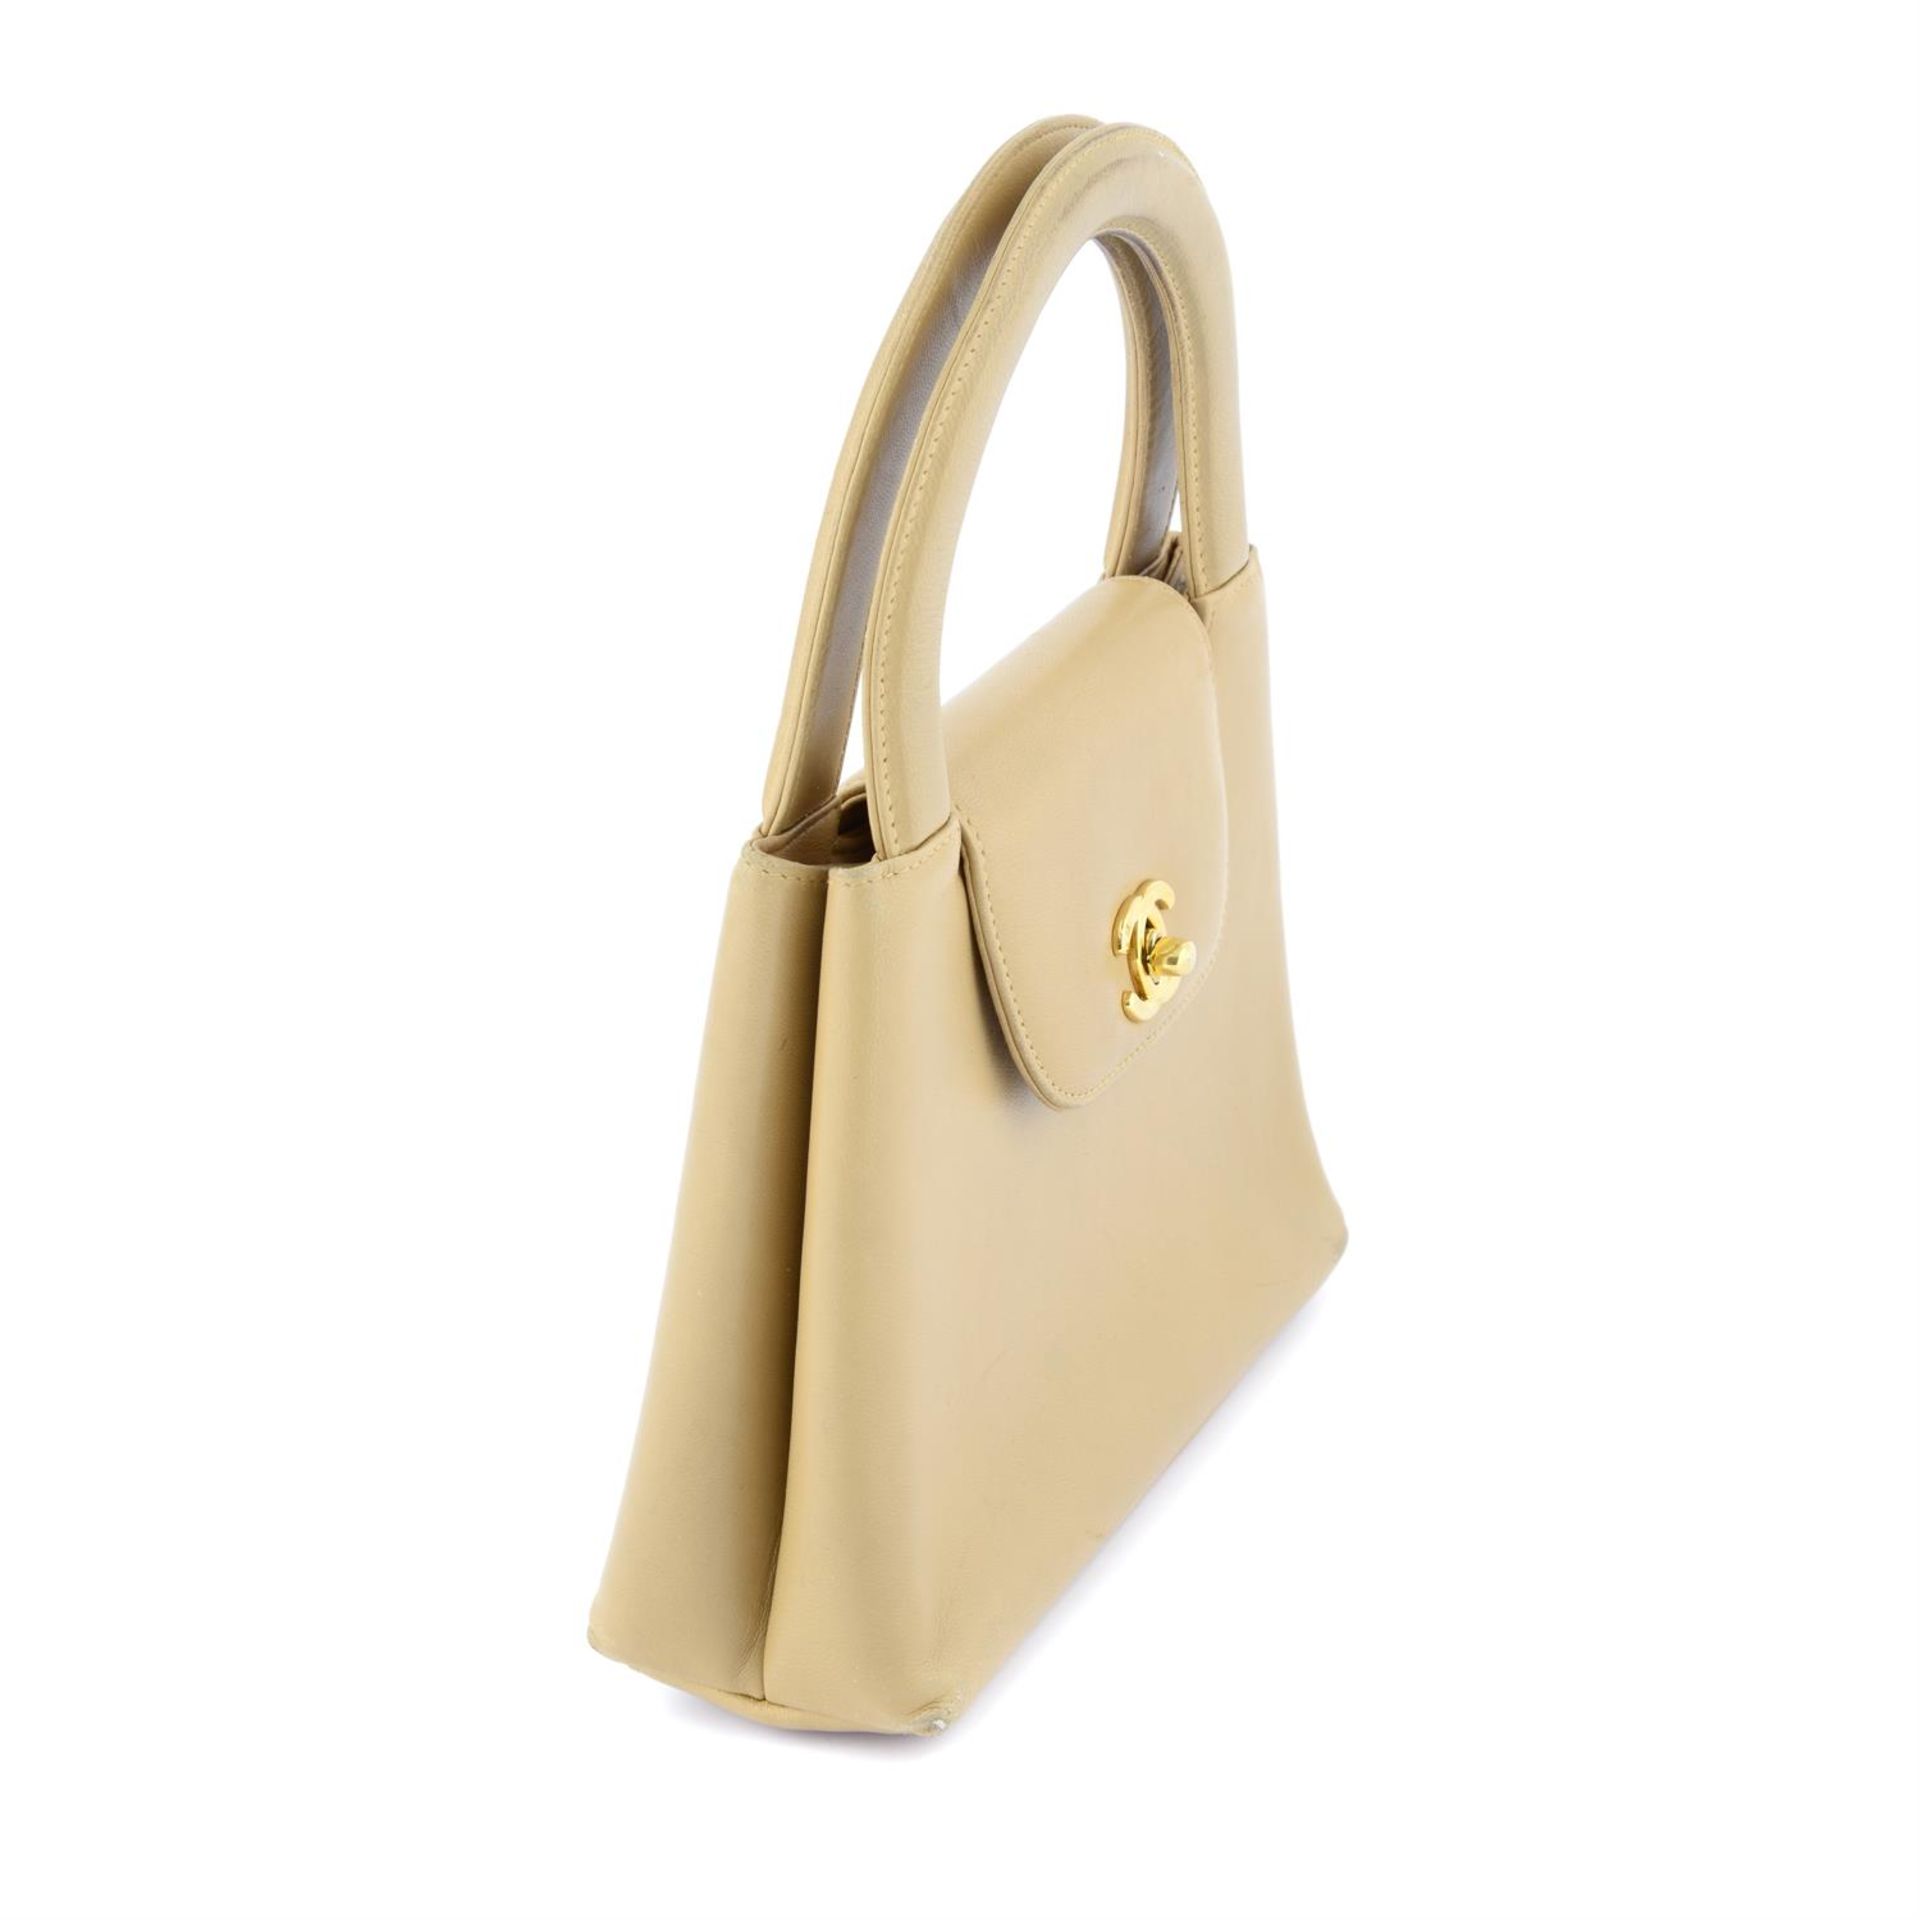 CHANEL - a beige Lambskin Kelly handbag. - Image 3 of 4